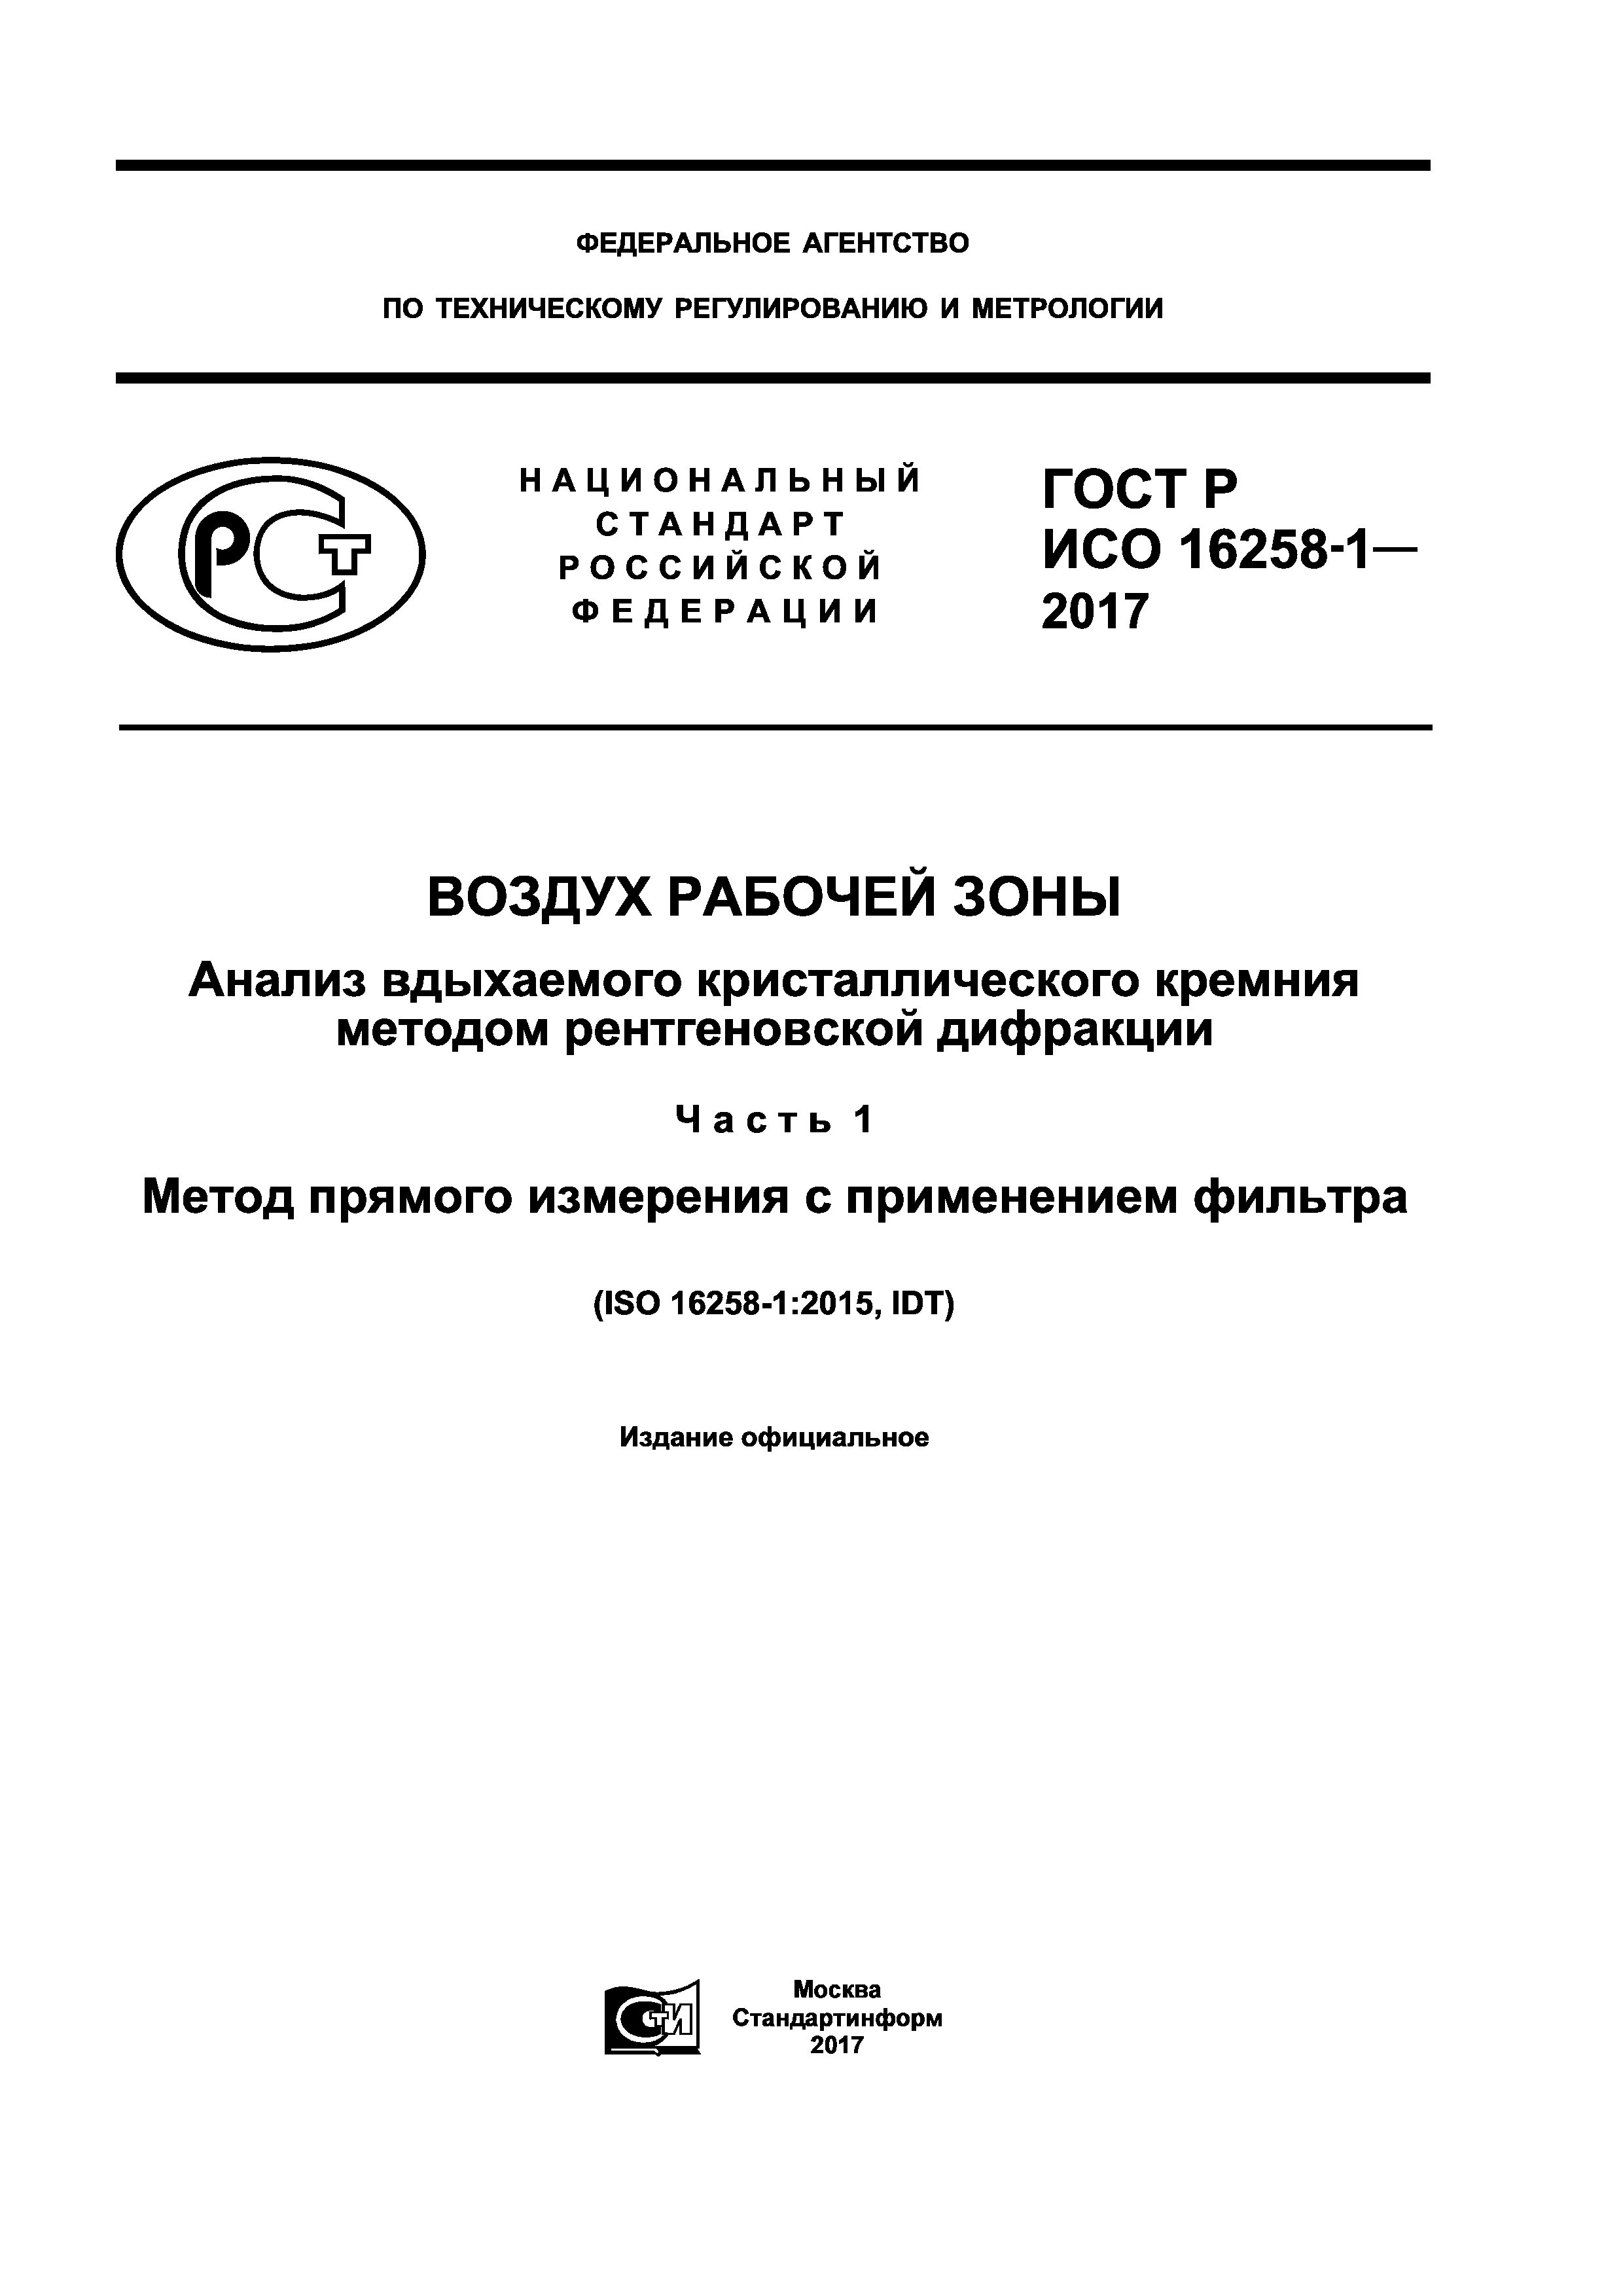 ГОСТ Р ИСО 16258-1-2017